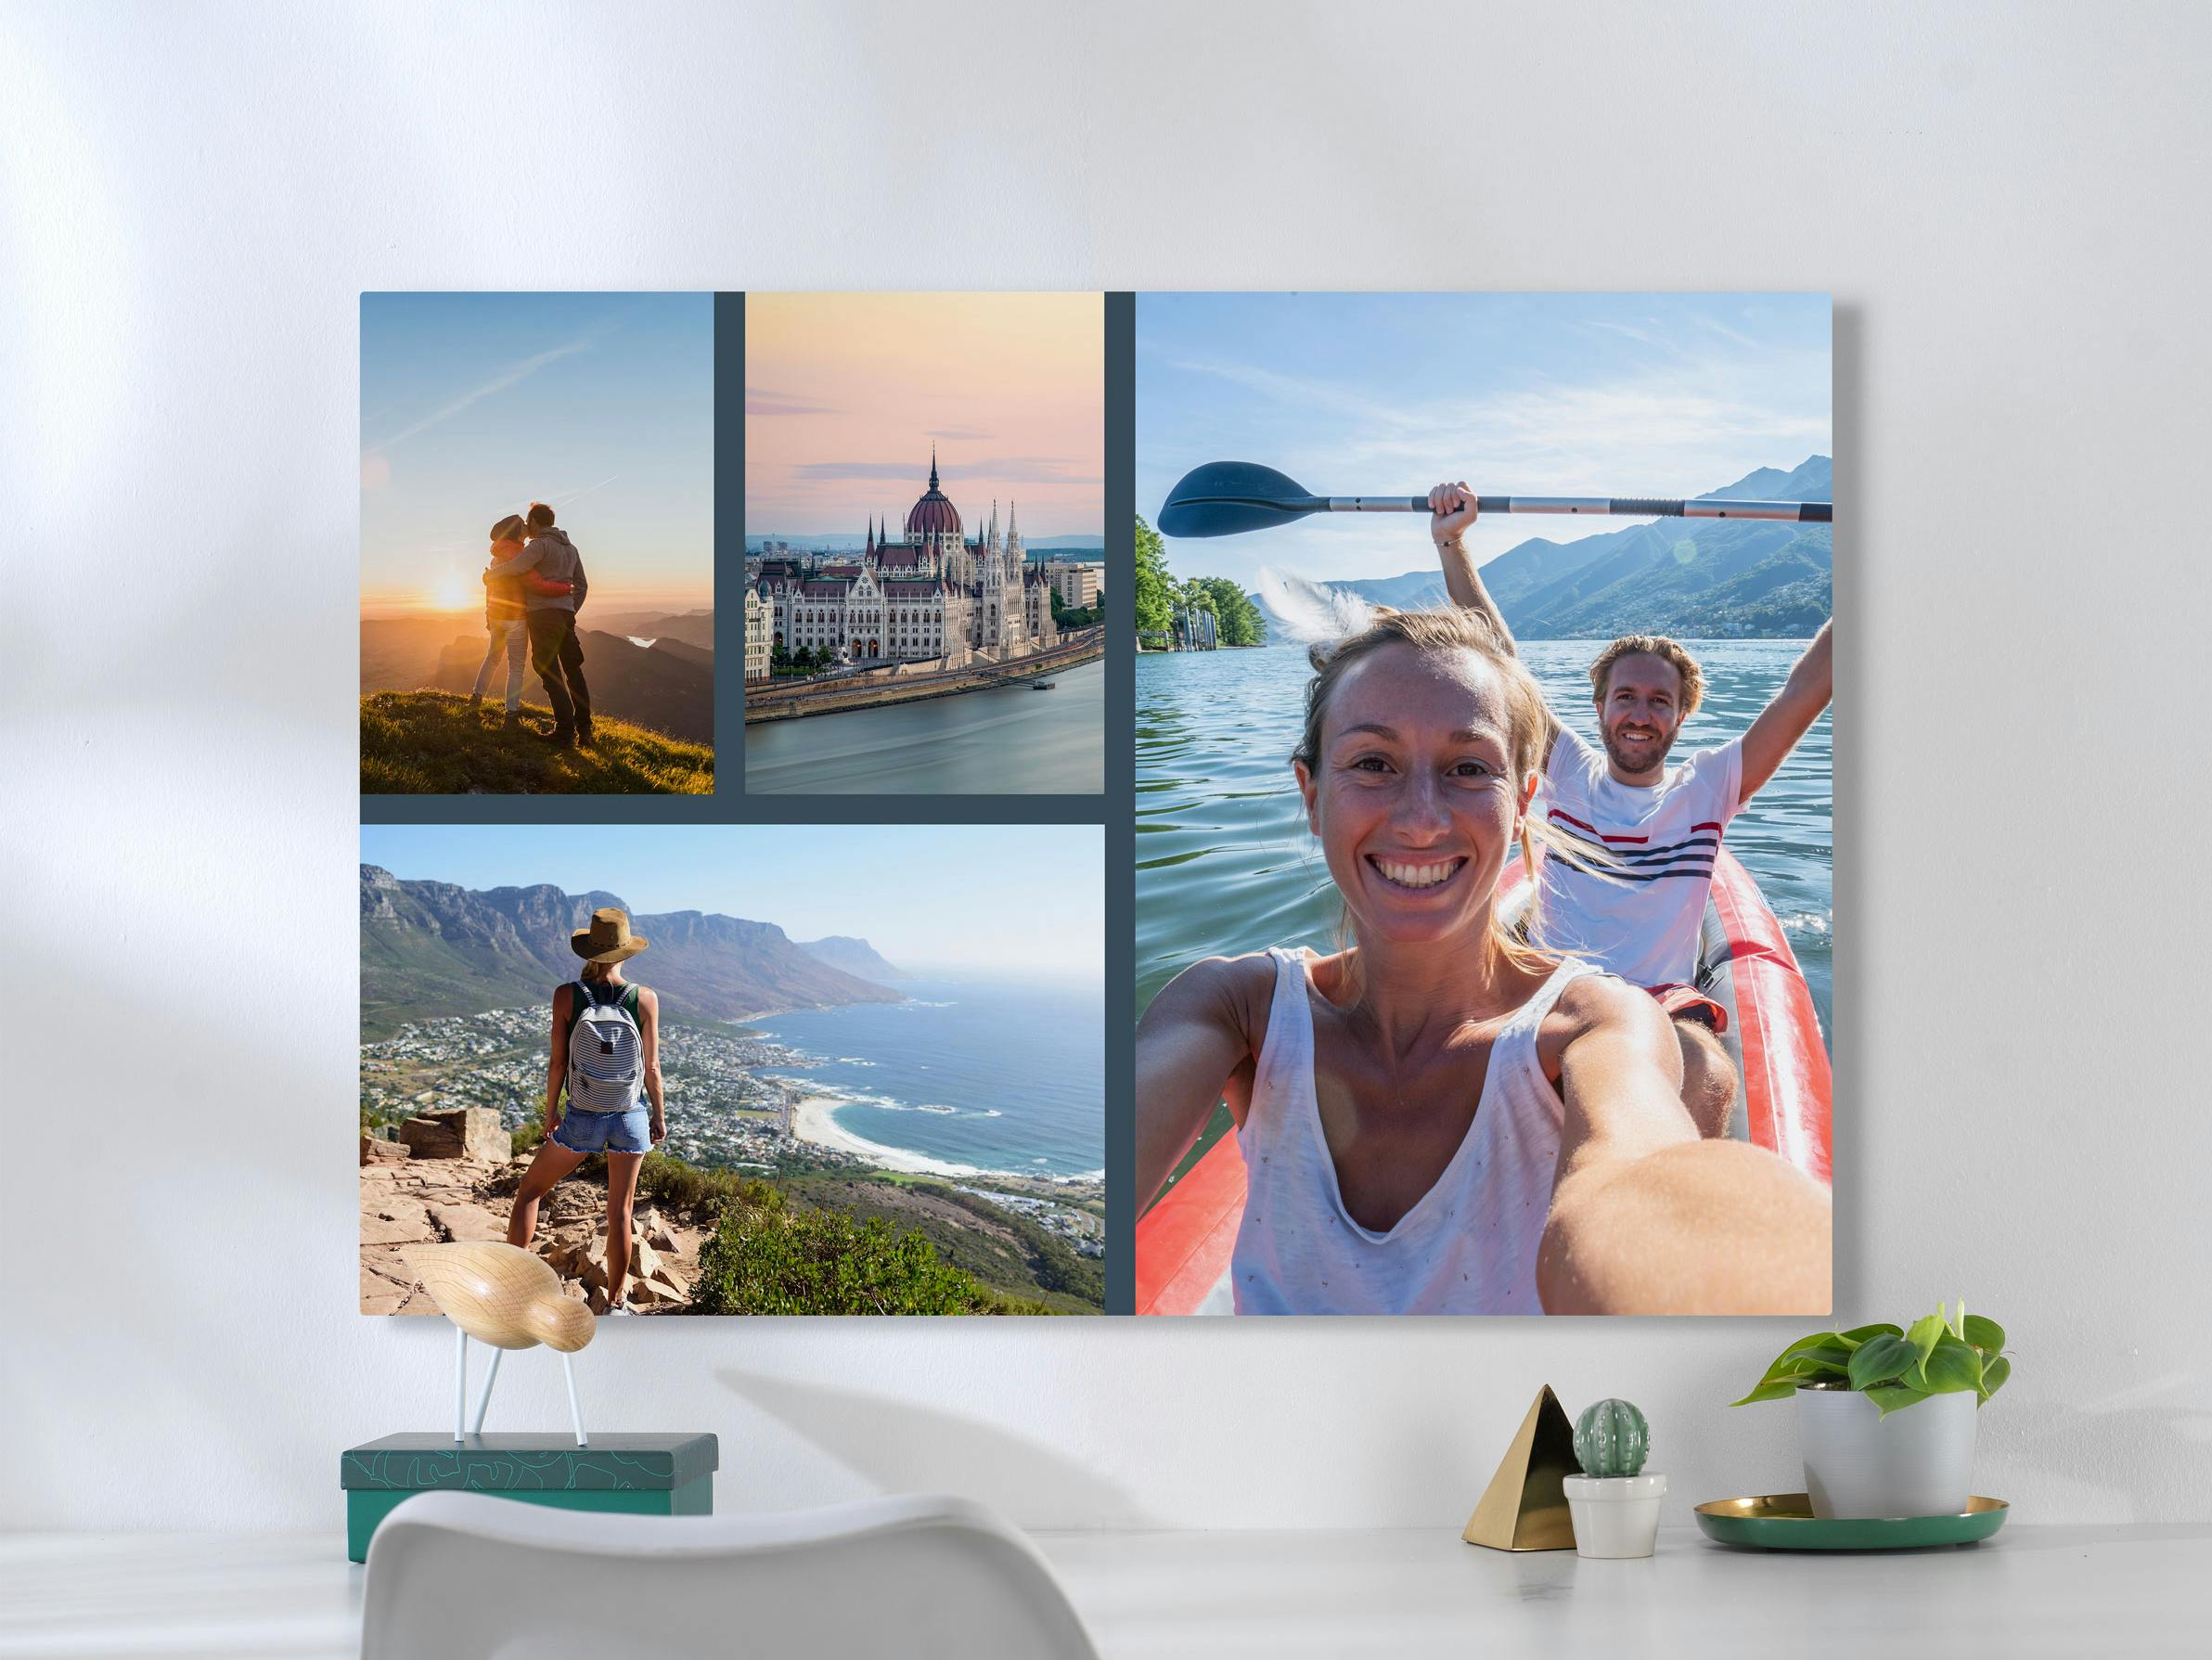 Foto auf Forex als Collage mit Pärchenbildern aus dem Urlaub